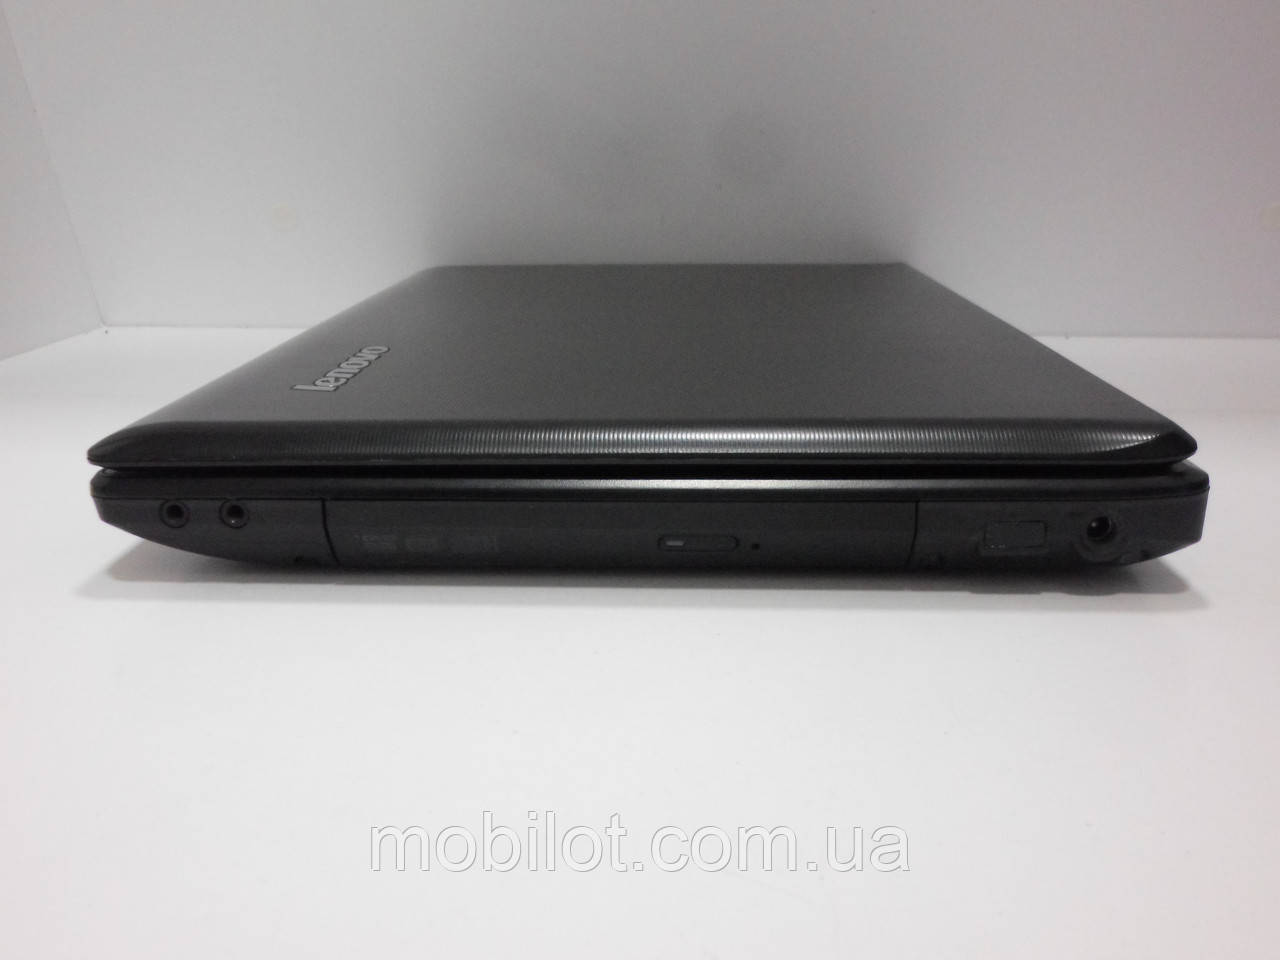 Ноутбук Lenovo G575 Цена Украина